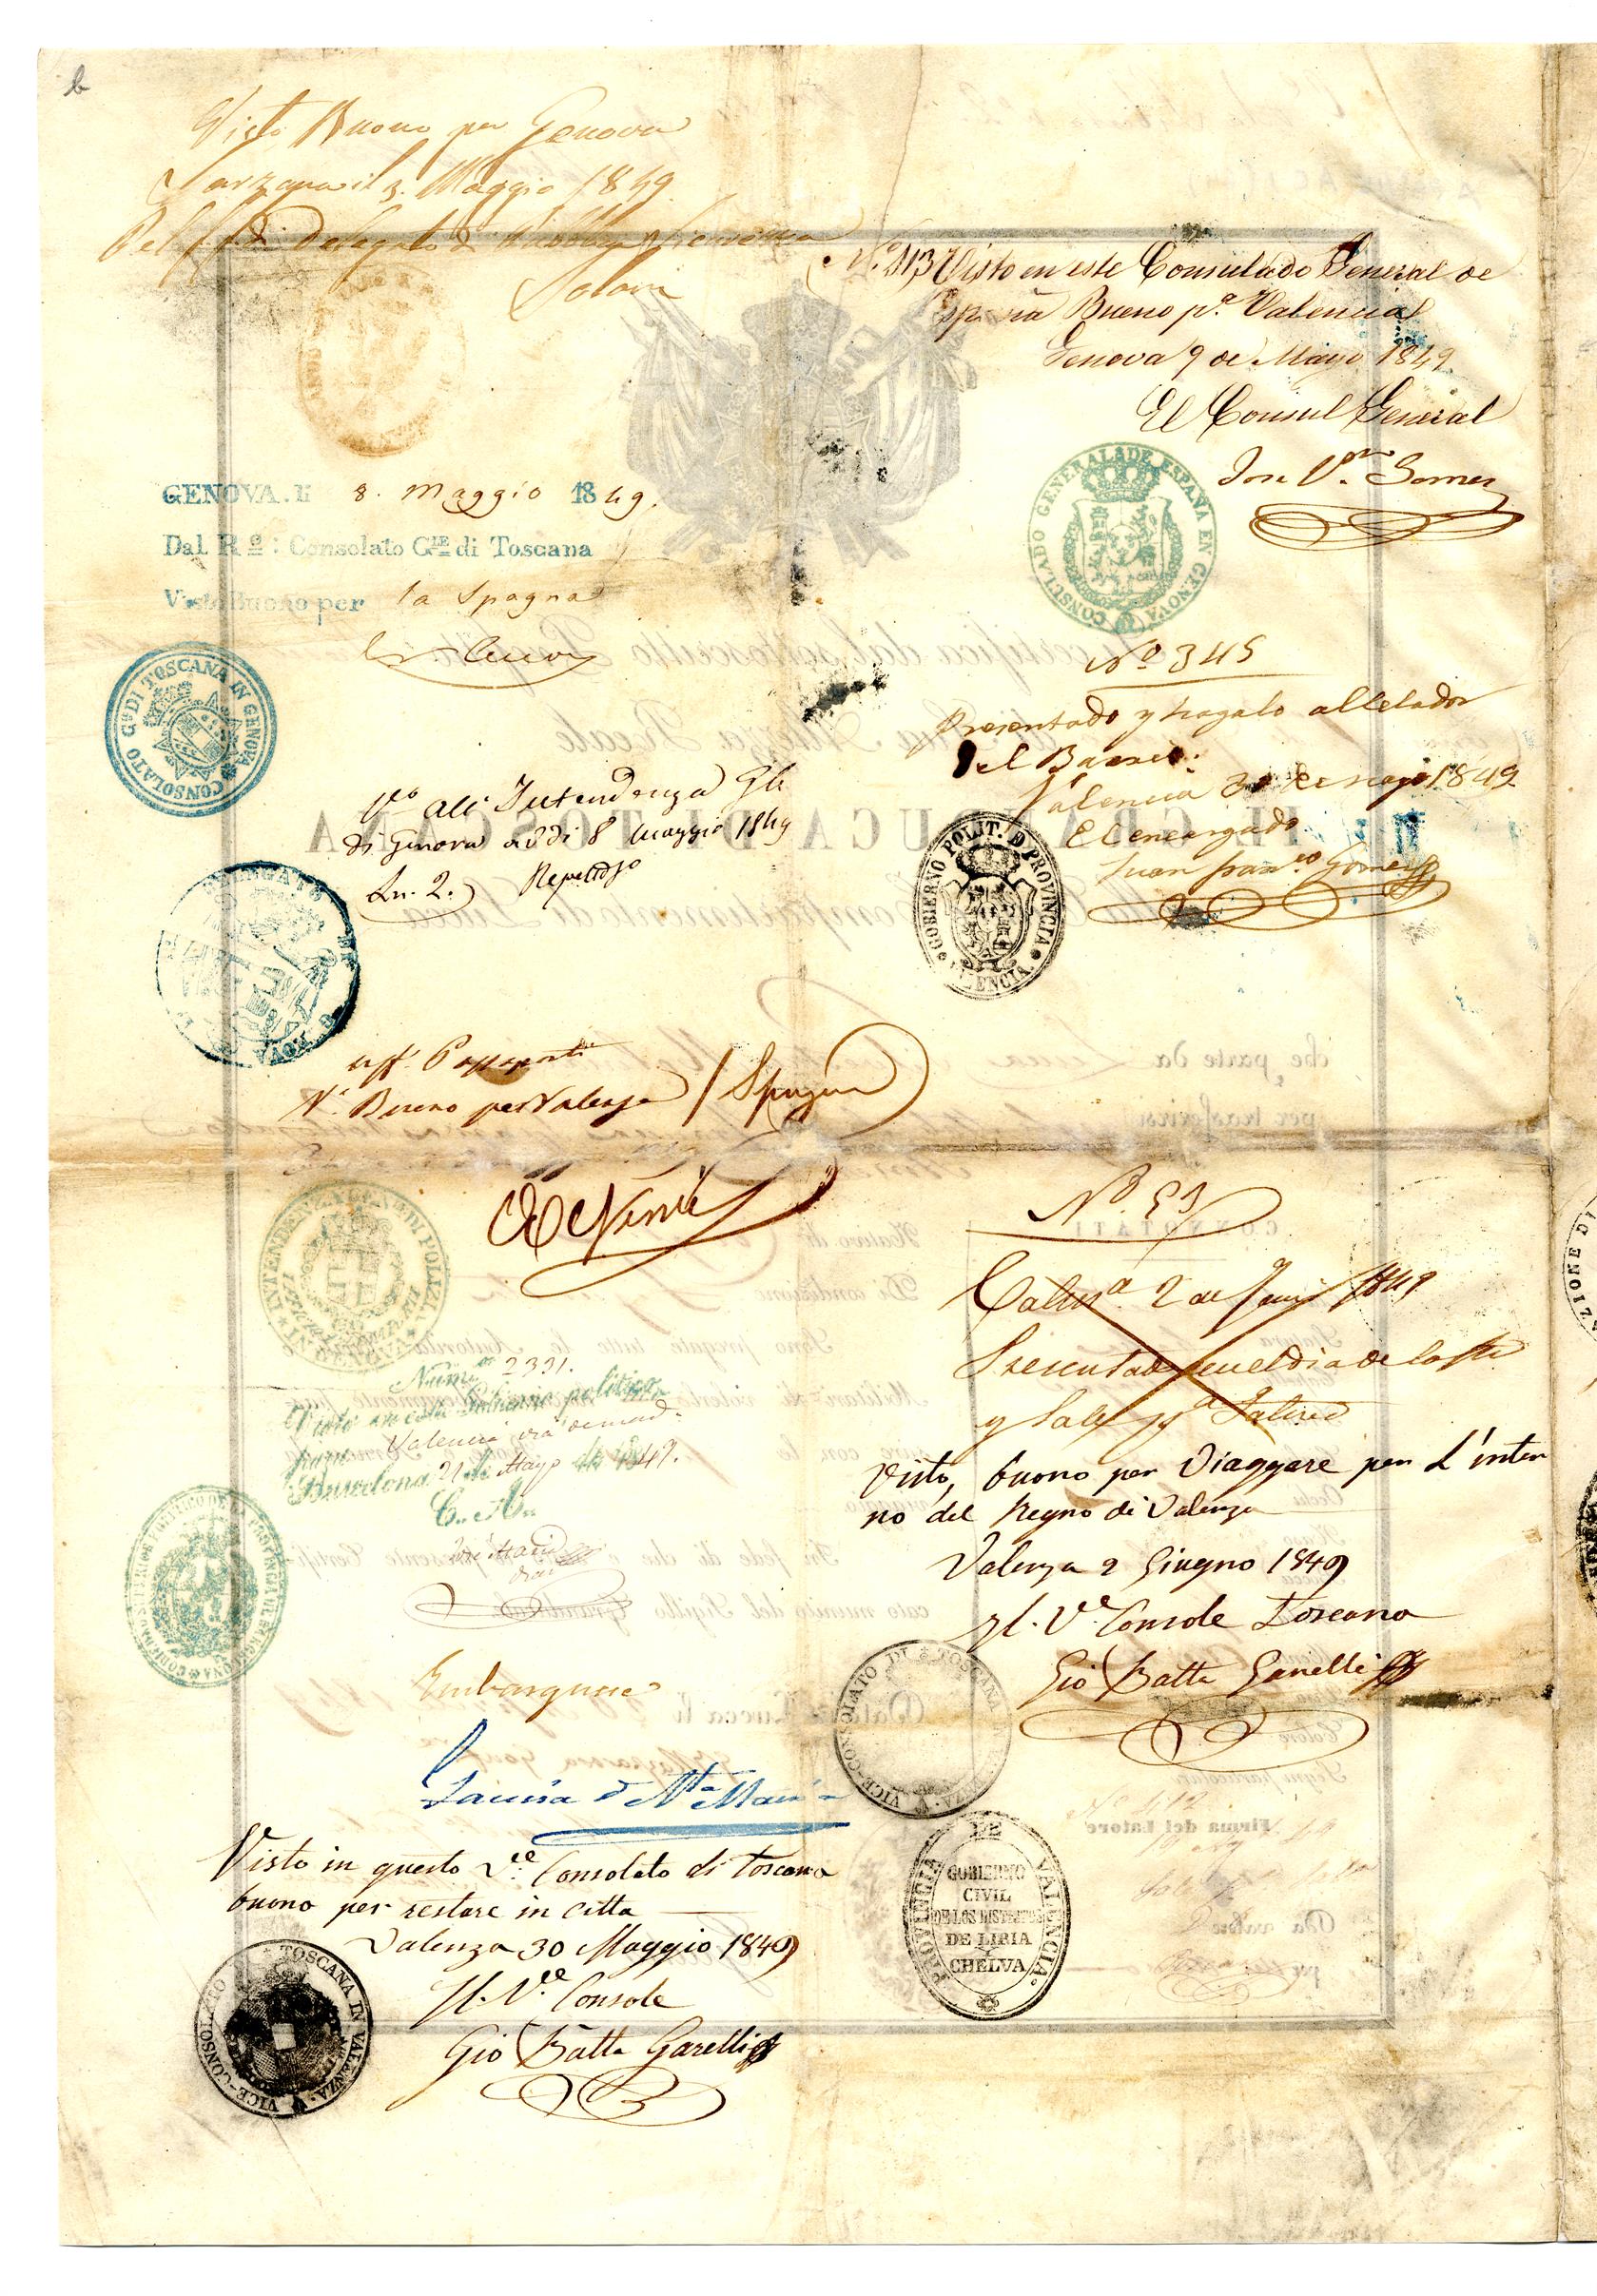 Passaporte de Silvestre Molinari